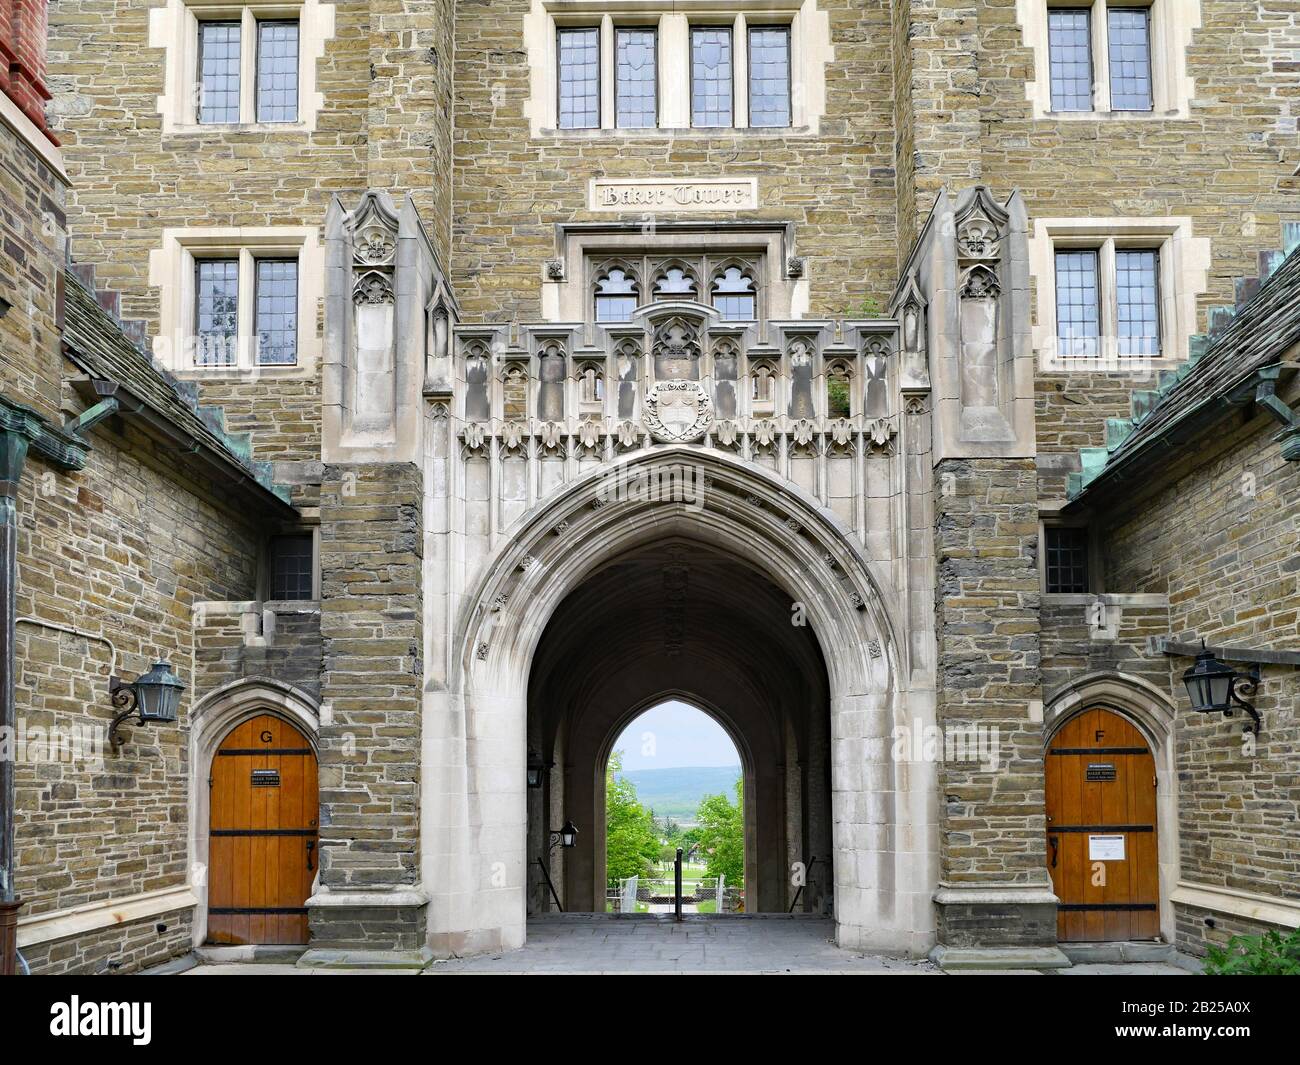 Ithaca, NY - MAGGIO 2019: Il campus della Cornell University ha molti eleganti edifici in stile neogotico in pietra, come questa sala di residenza chiamata Baker Tower. Foto Stock